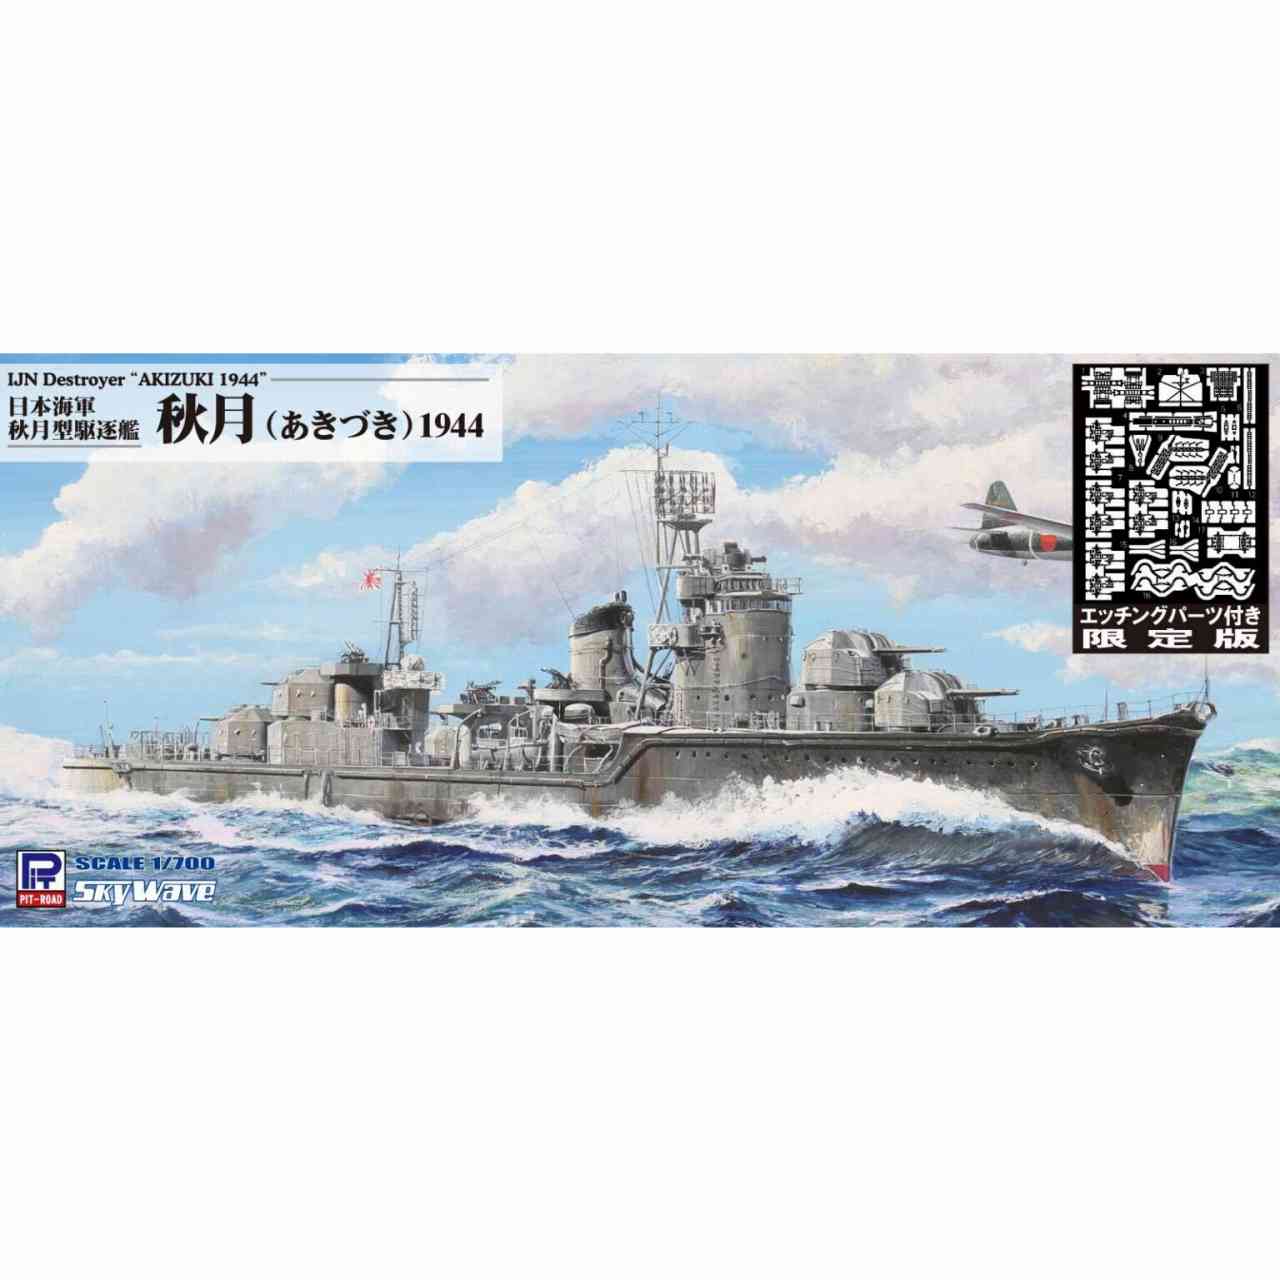 【新製品】W241E 日本海軍 秋月型駆逐艦 秋月 エッチングパーツ付き